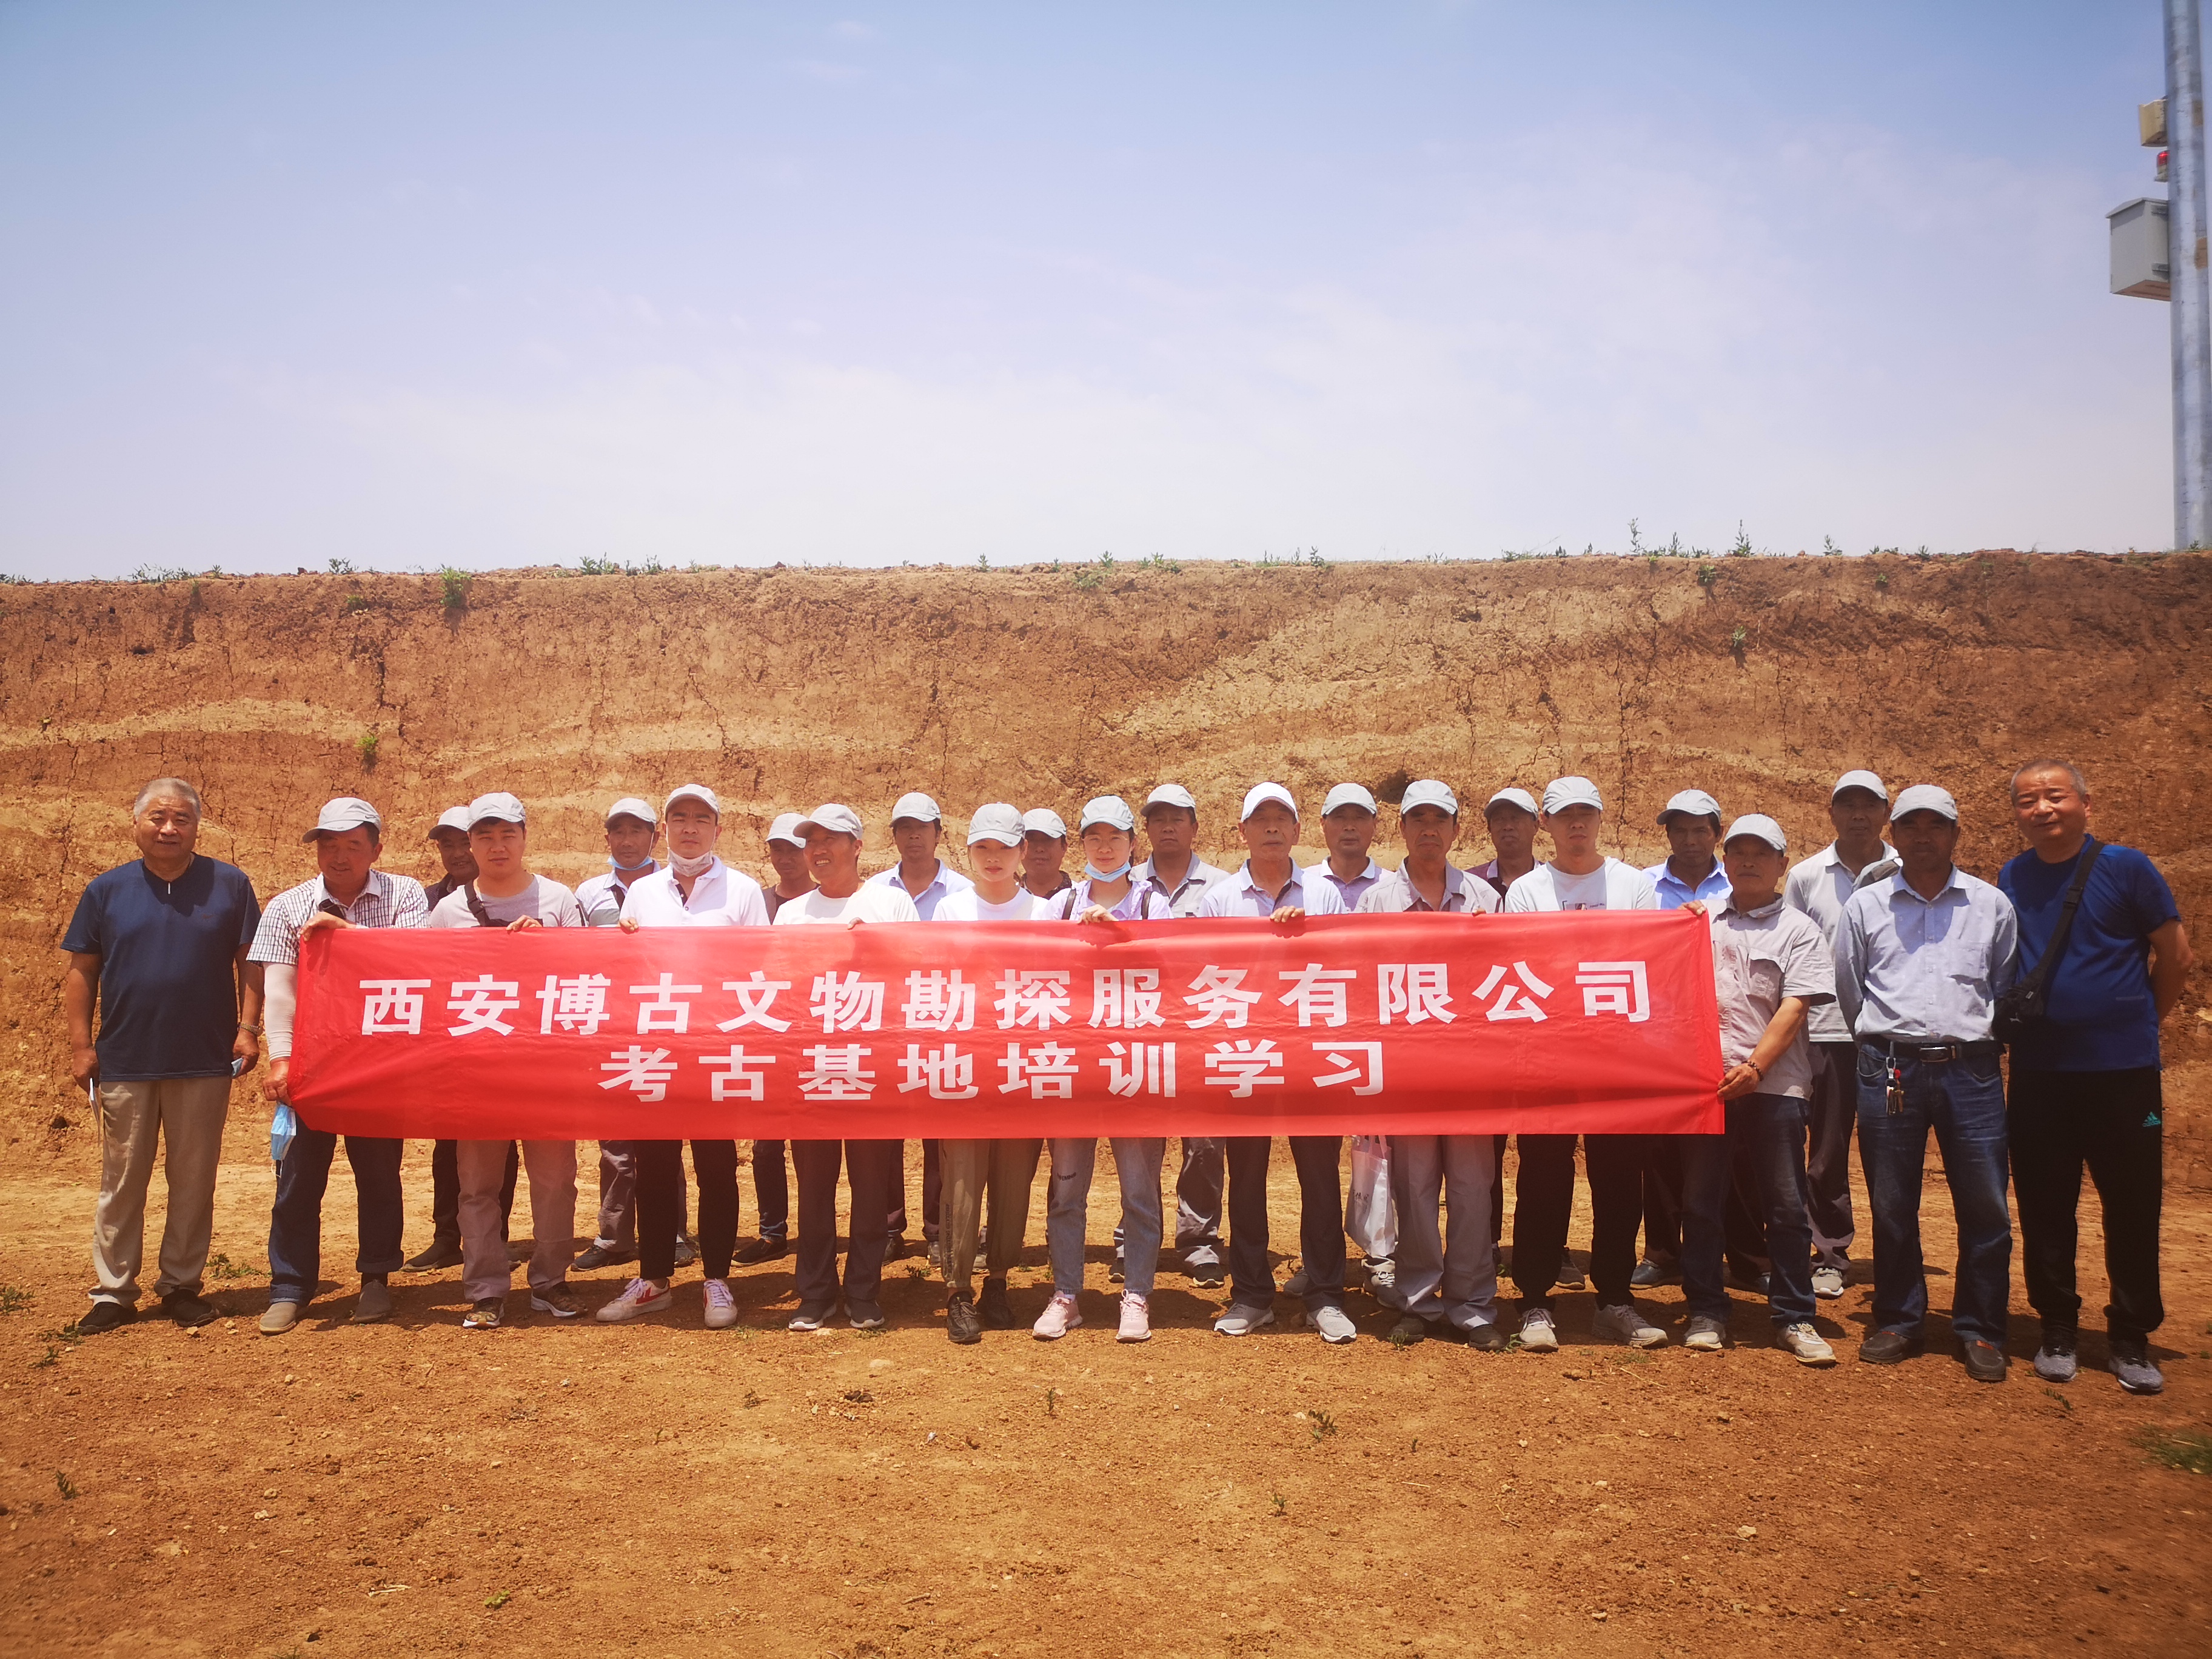 2020年5月30日我公司組織工作人員及勘探隊員去秦東陵和驪山遺址考古工地進行培訓學習